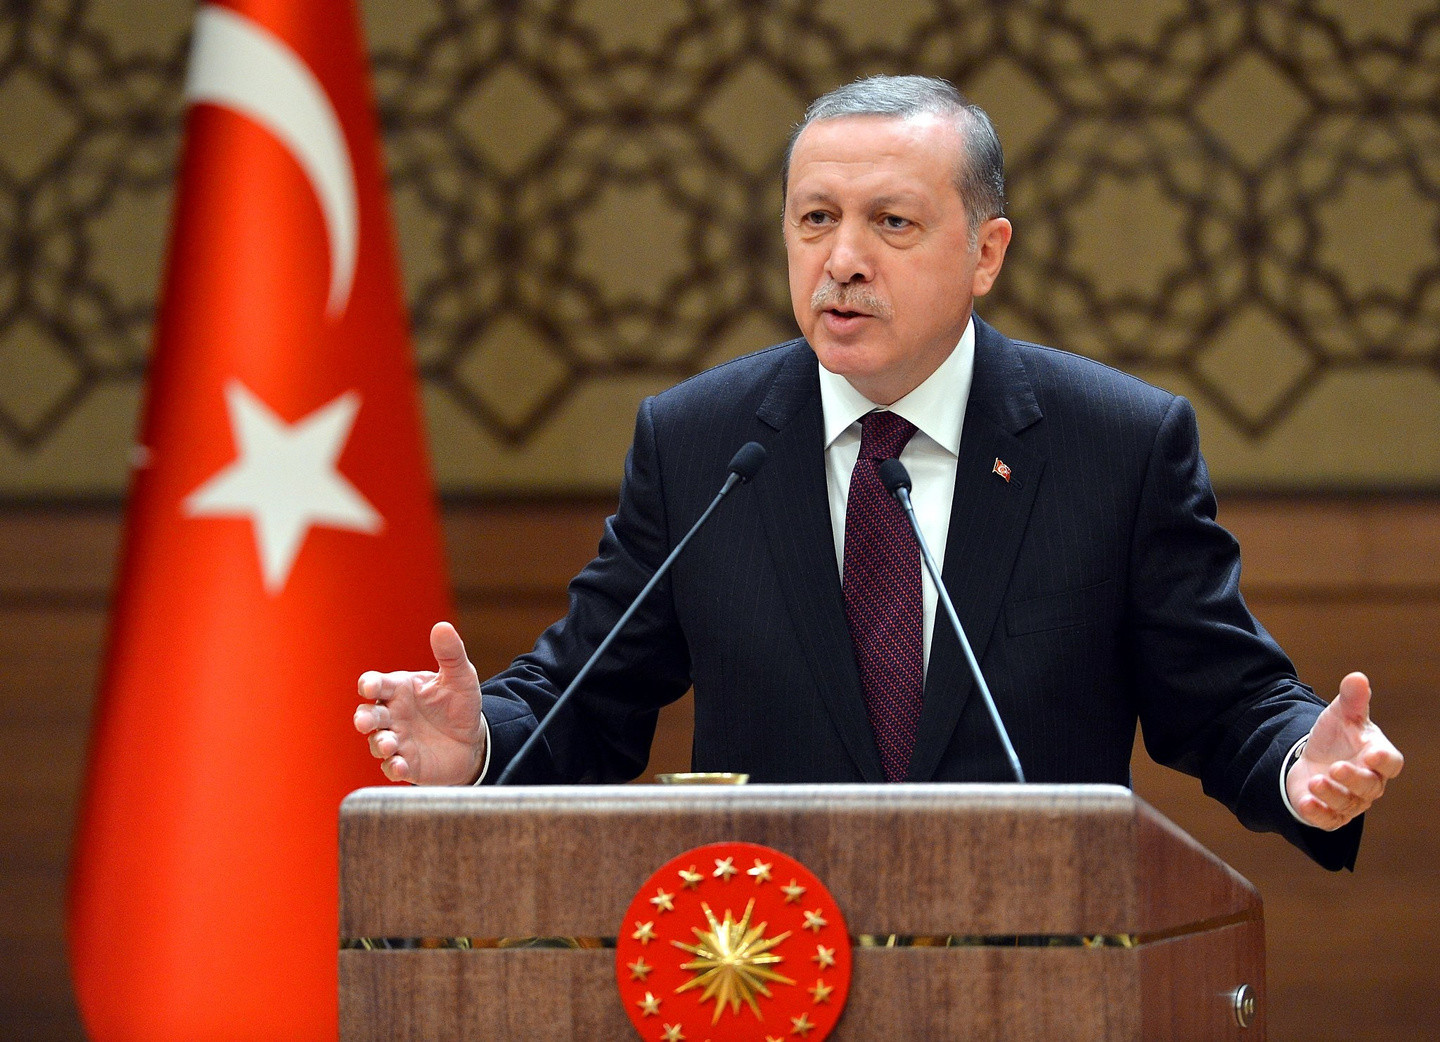 Реджеп Тайип Эрдоган. Фото © Flickr / Recep Tayyip Erdoğan
